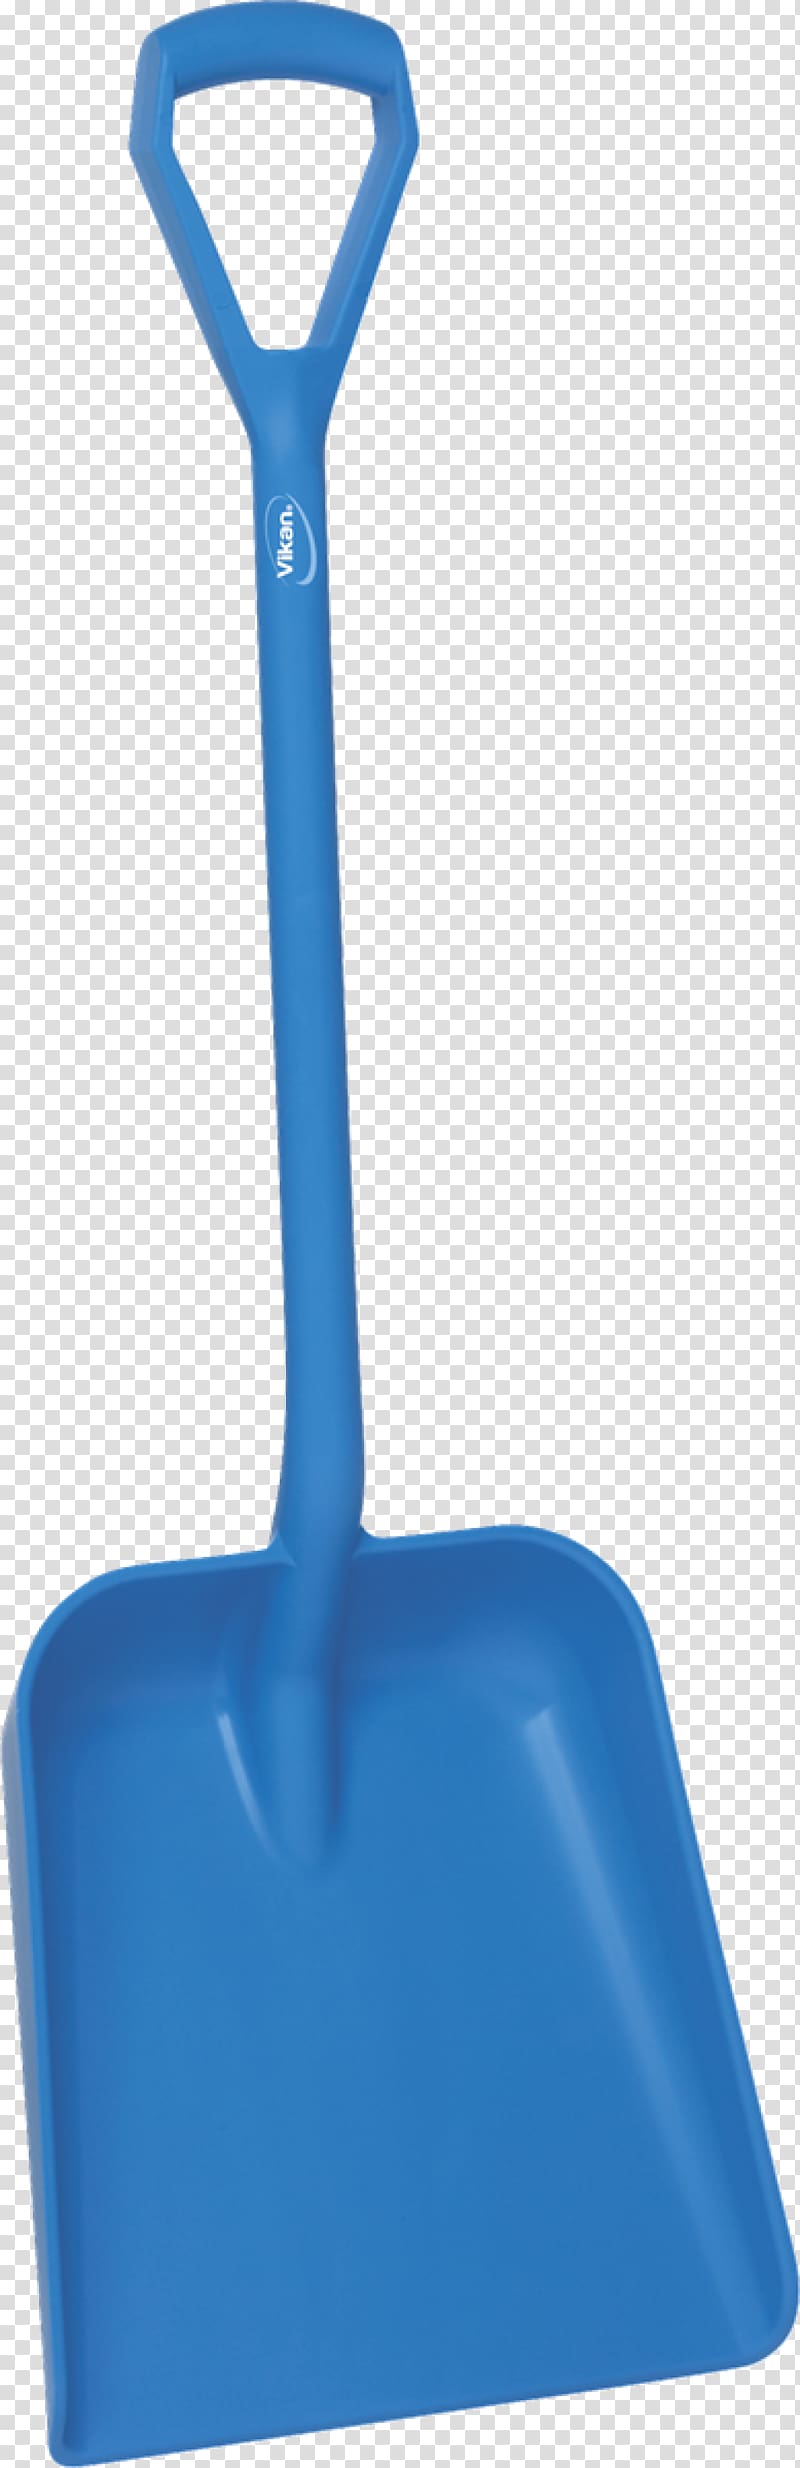 Shovel Tool Dustpan Gardening Forks Spade, shovel transparent background PNG clipart